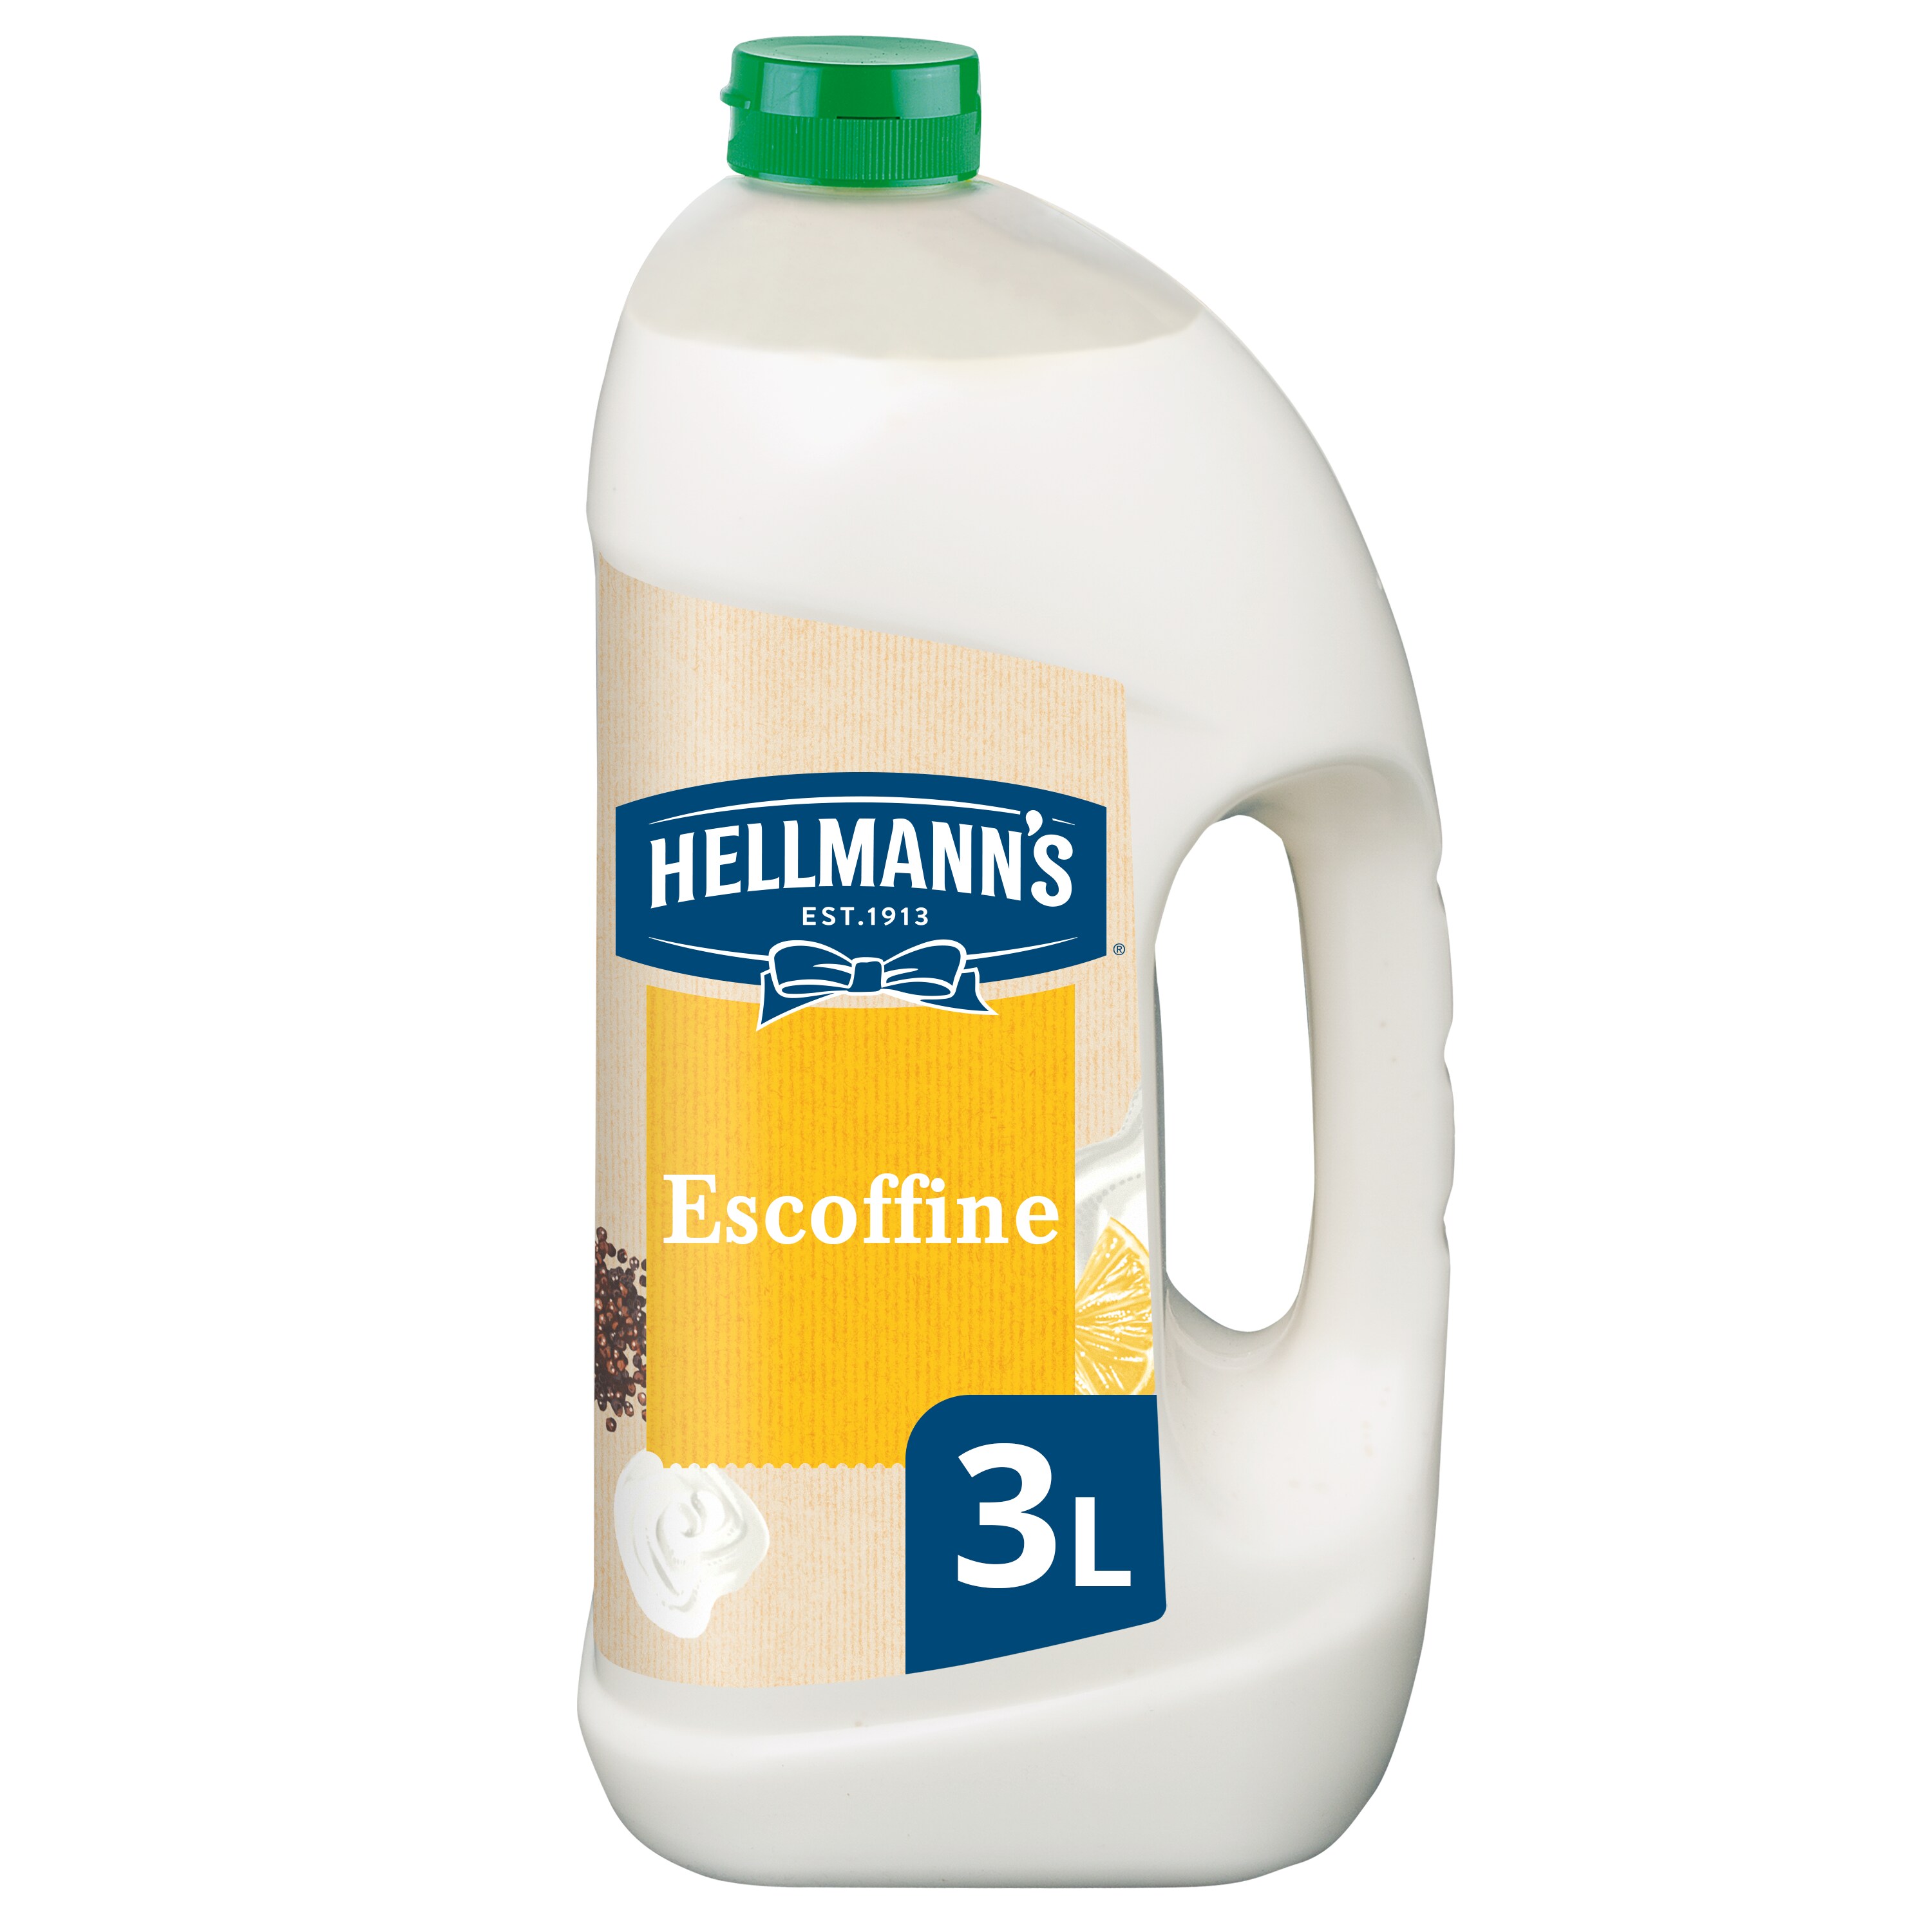 Hellmann's Escoffine Romig Vloeibaar 3L - 